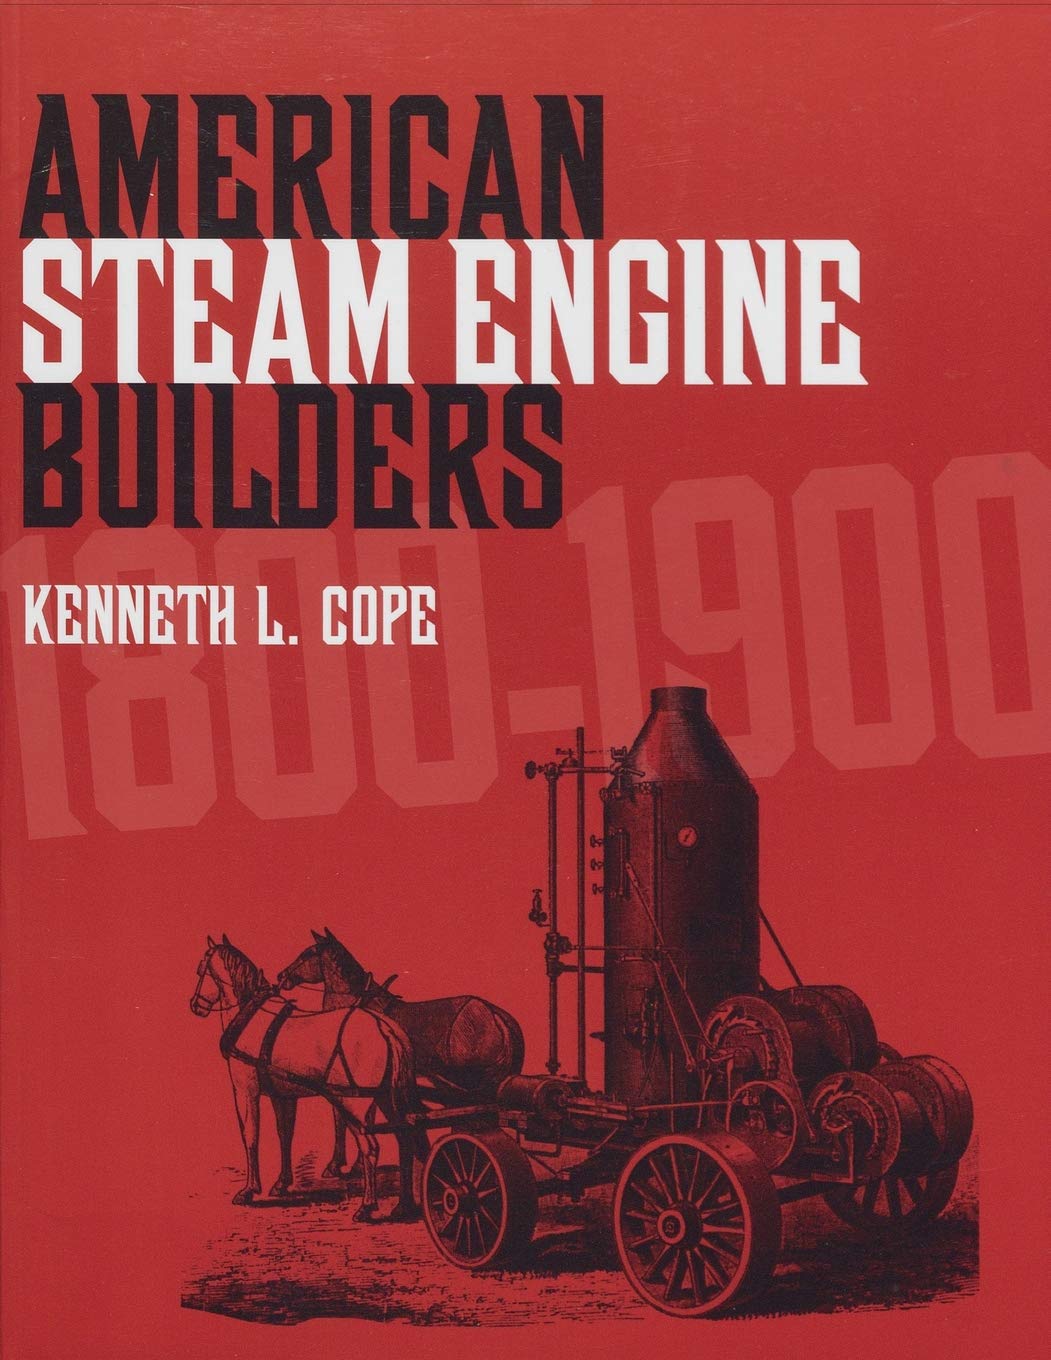 American Steam Engine Builders